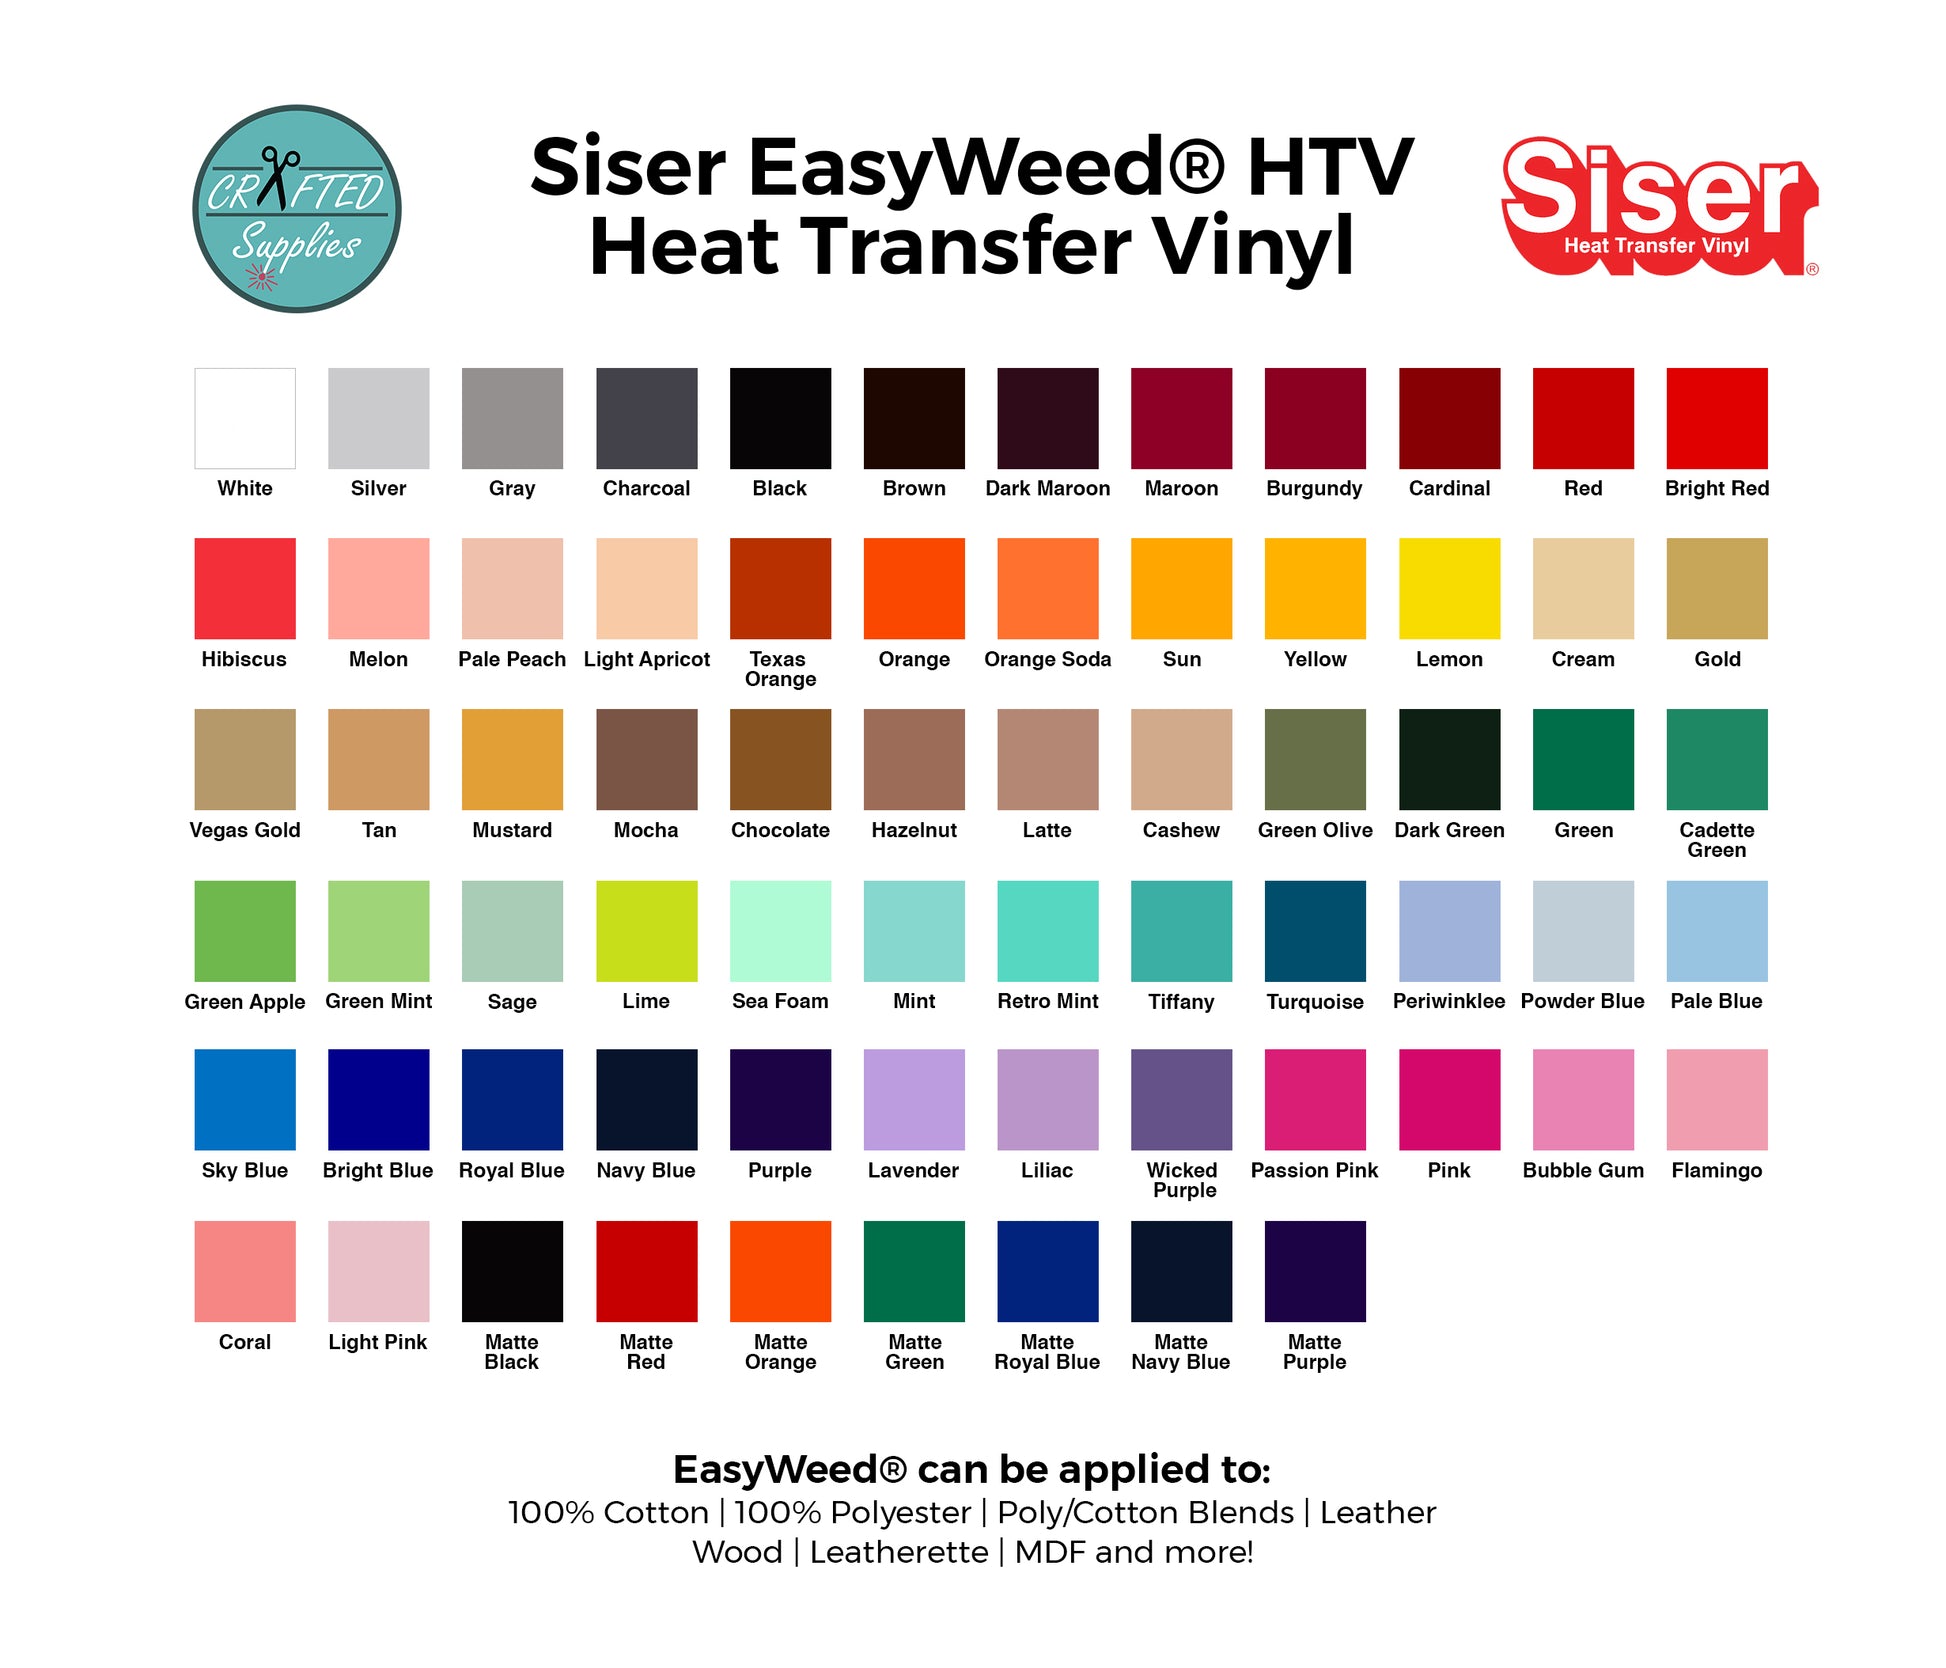 Glitter Sky Blue HTV Vinyl 25cm x 50cm